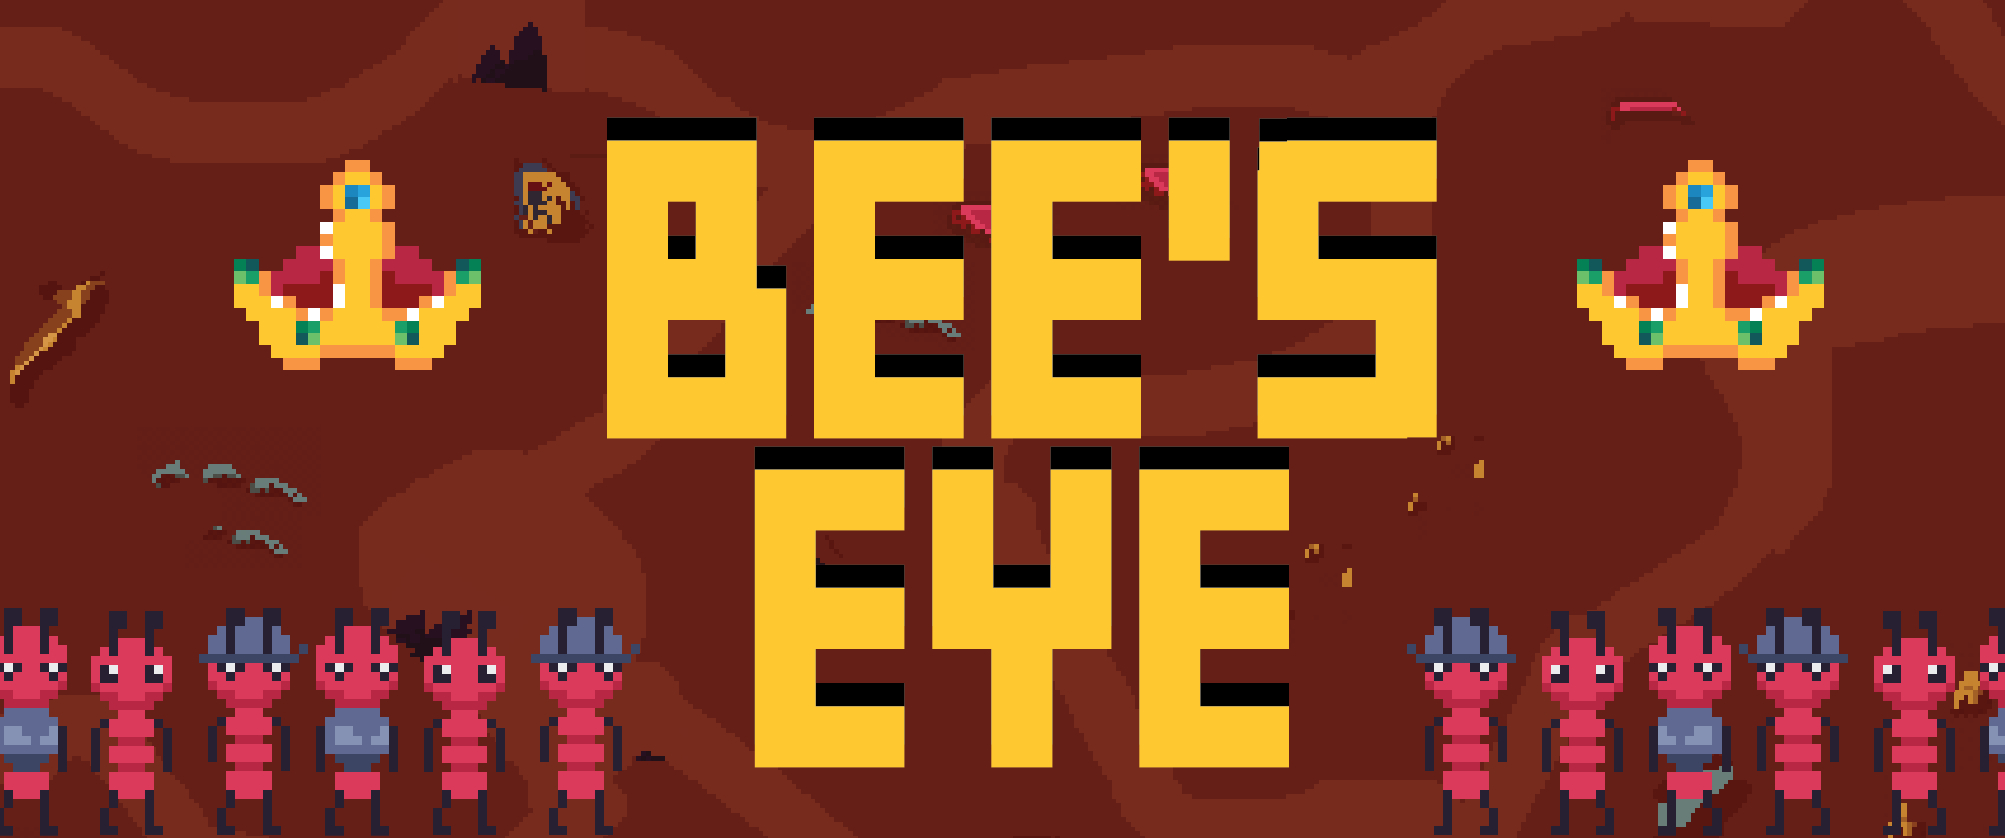 Bee's eye